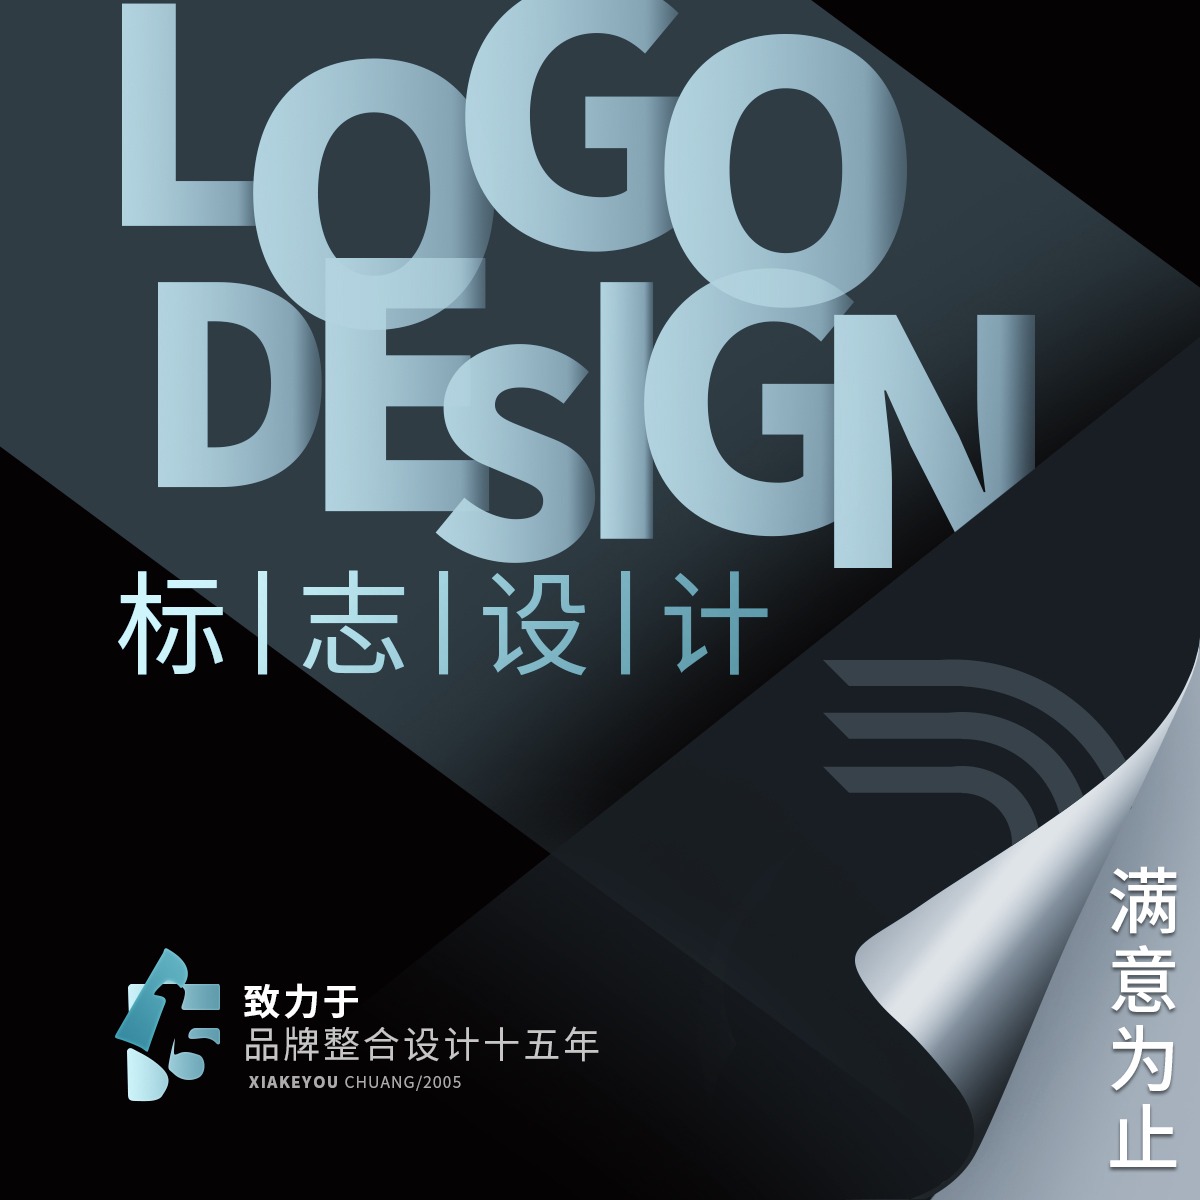 logo设计标志设计休闲娱乐健身美容行业logo设计LOGO